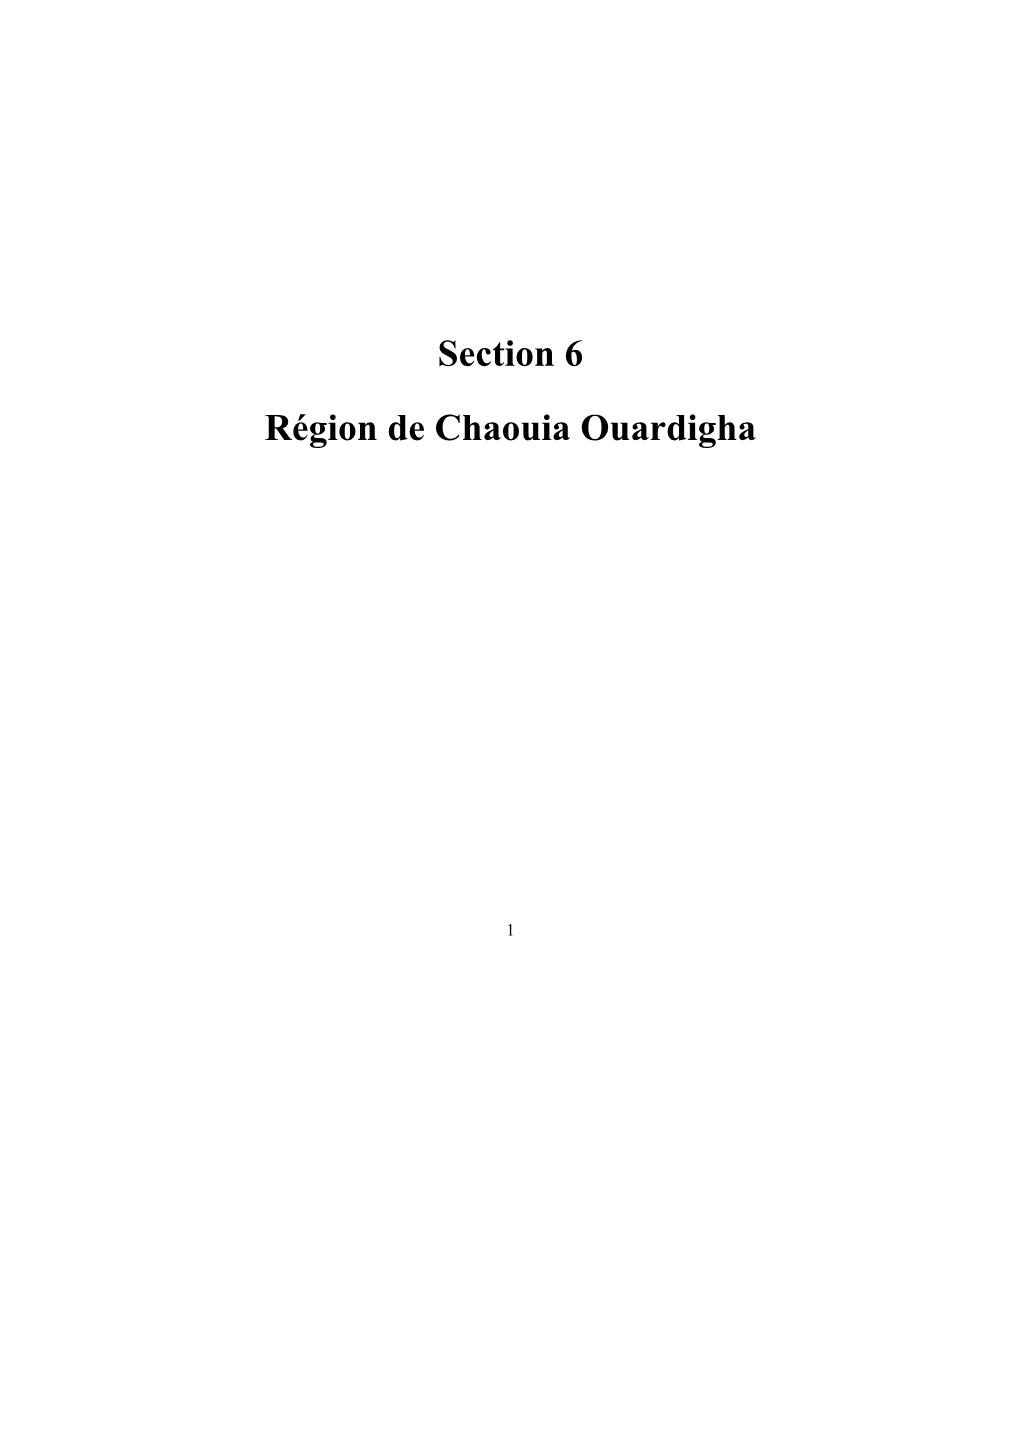 Section 6 Région De Chaouia Ouardigha